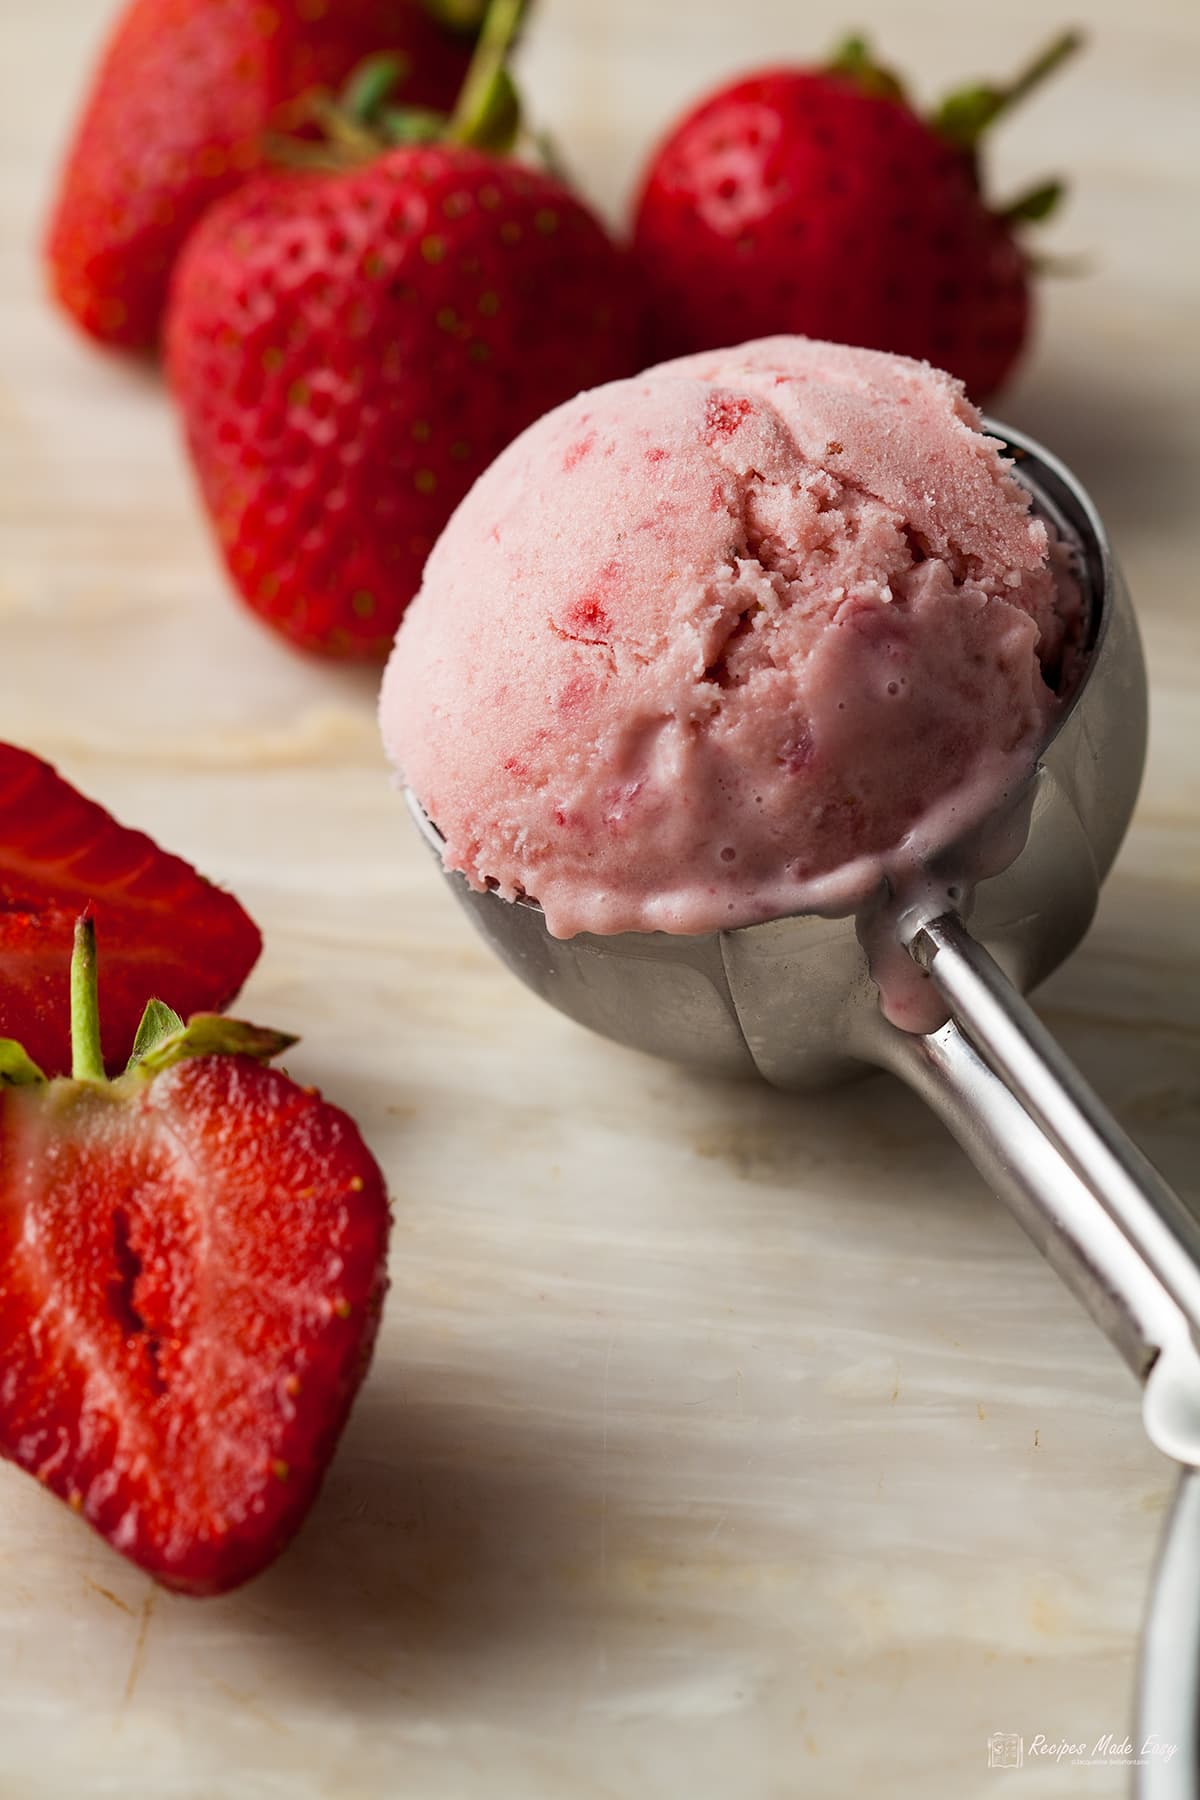 https://onlycrumbsremain.com/wp-content/uploads/2017/07/strawberry-ice-cream-in-scoop.jpg